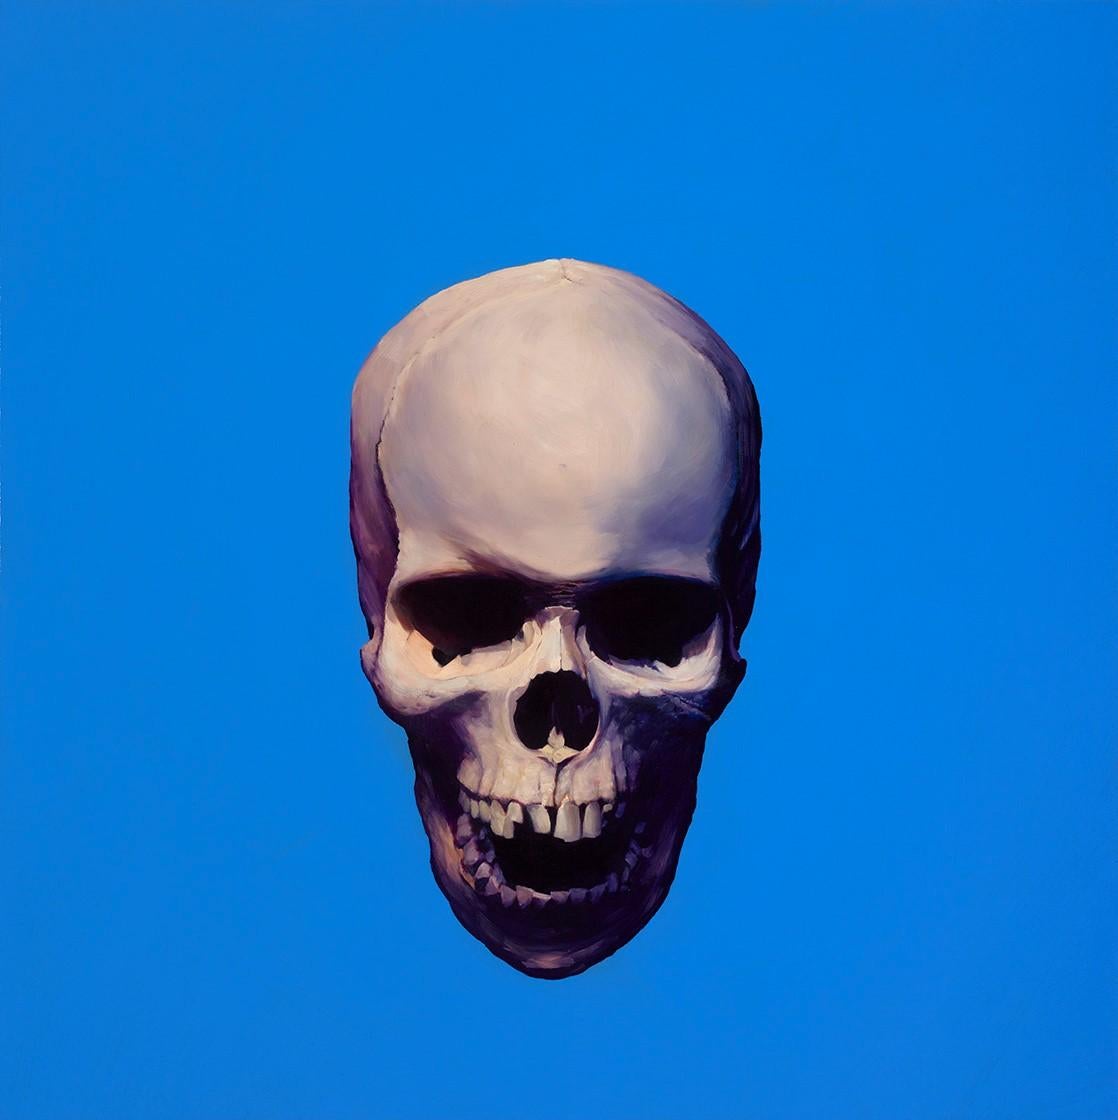 Skull 151112-03 - Mixed Media Art by James Lahey